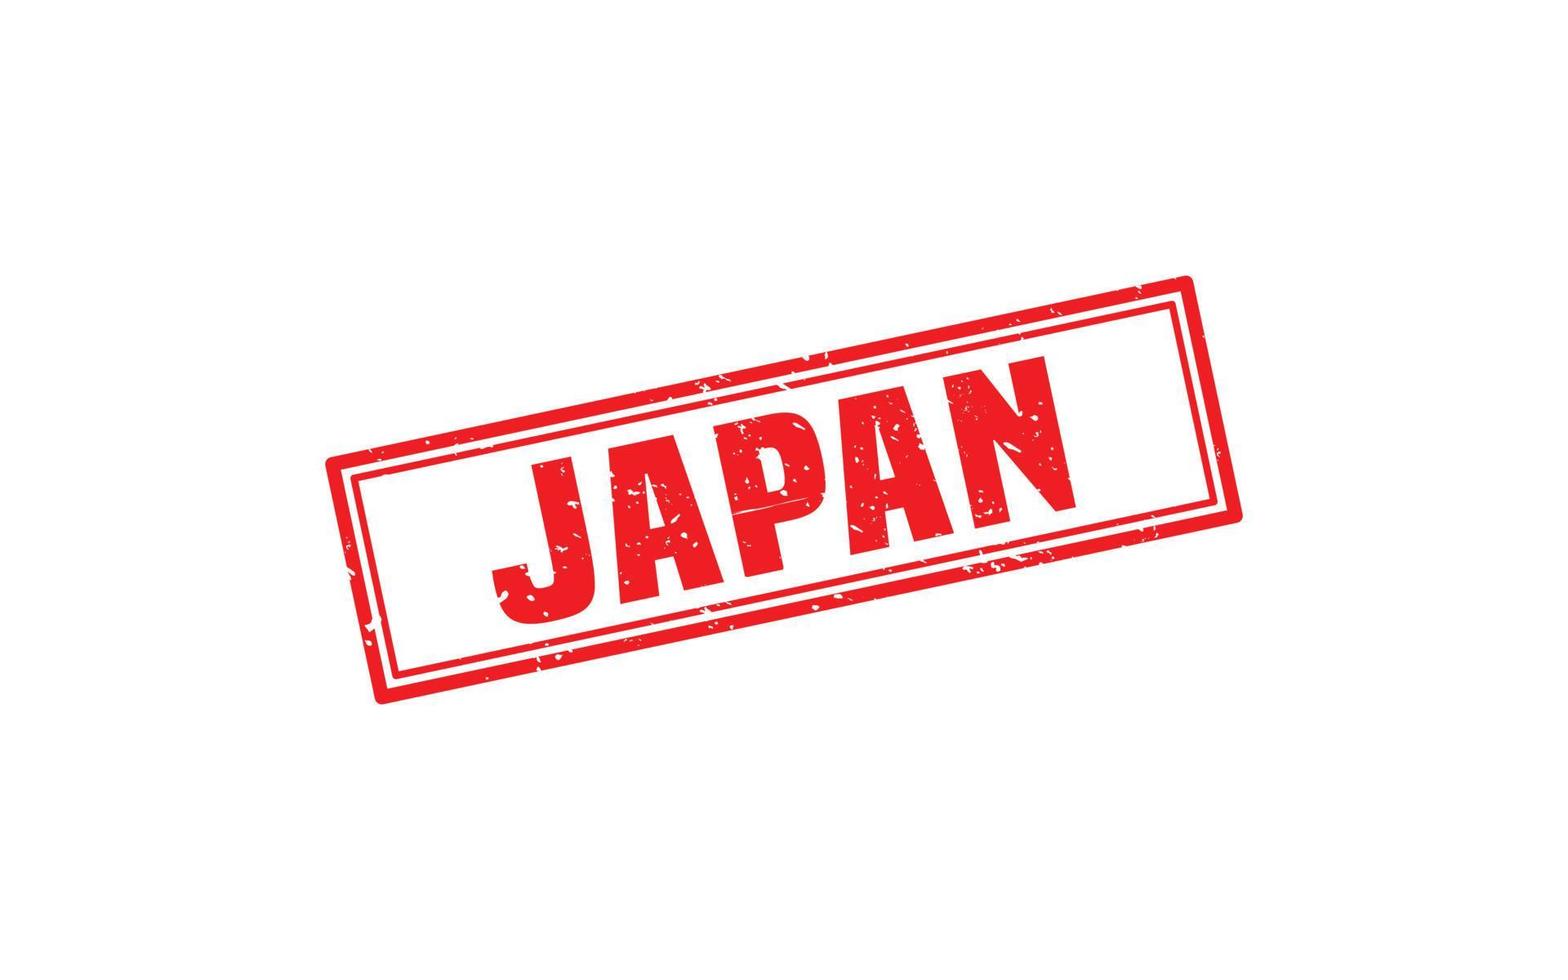 Japan postzegel rubber met grunge stijl Aan wit achtergrond vector